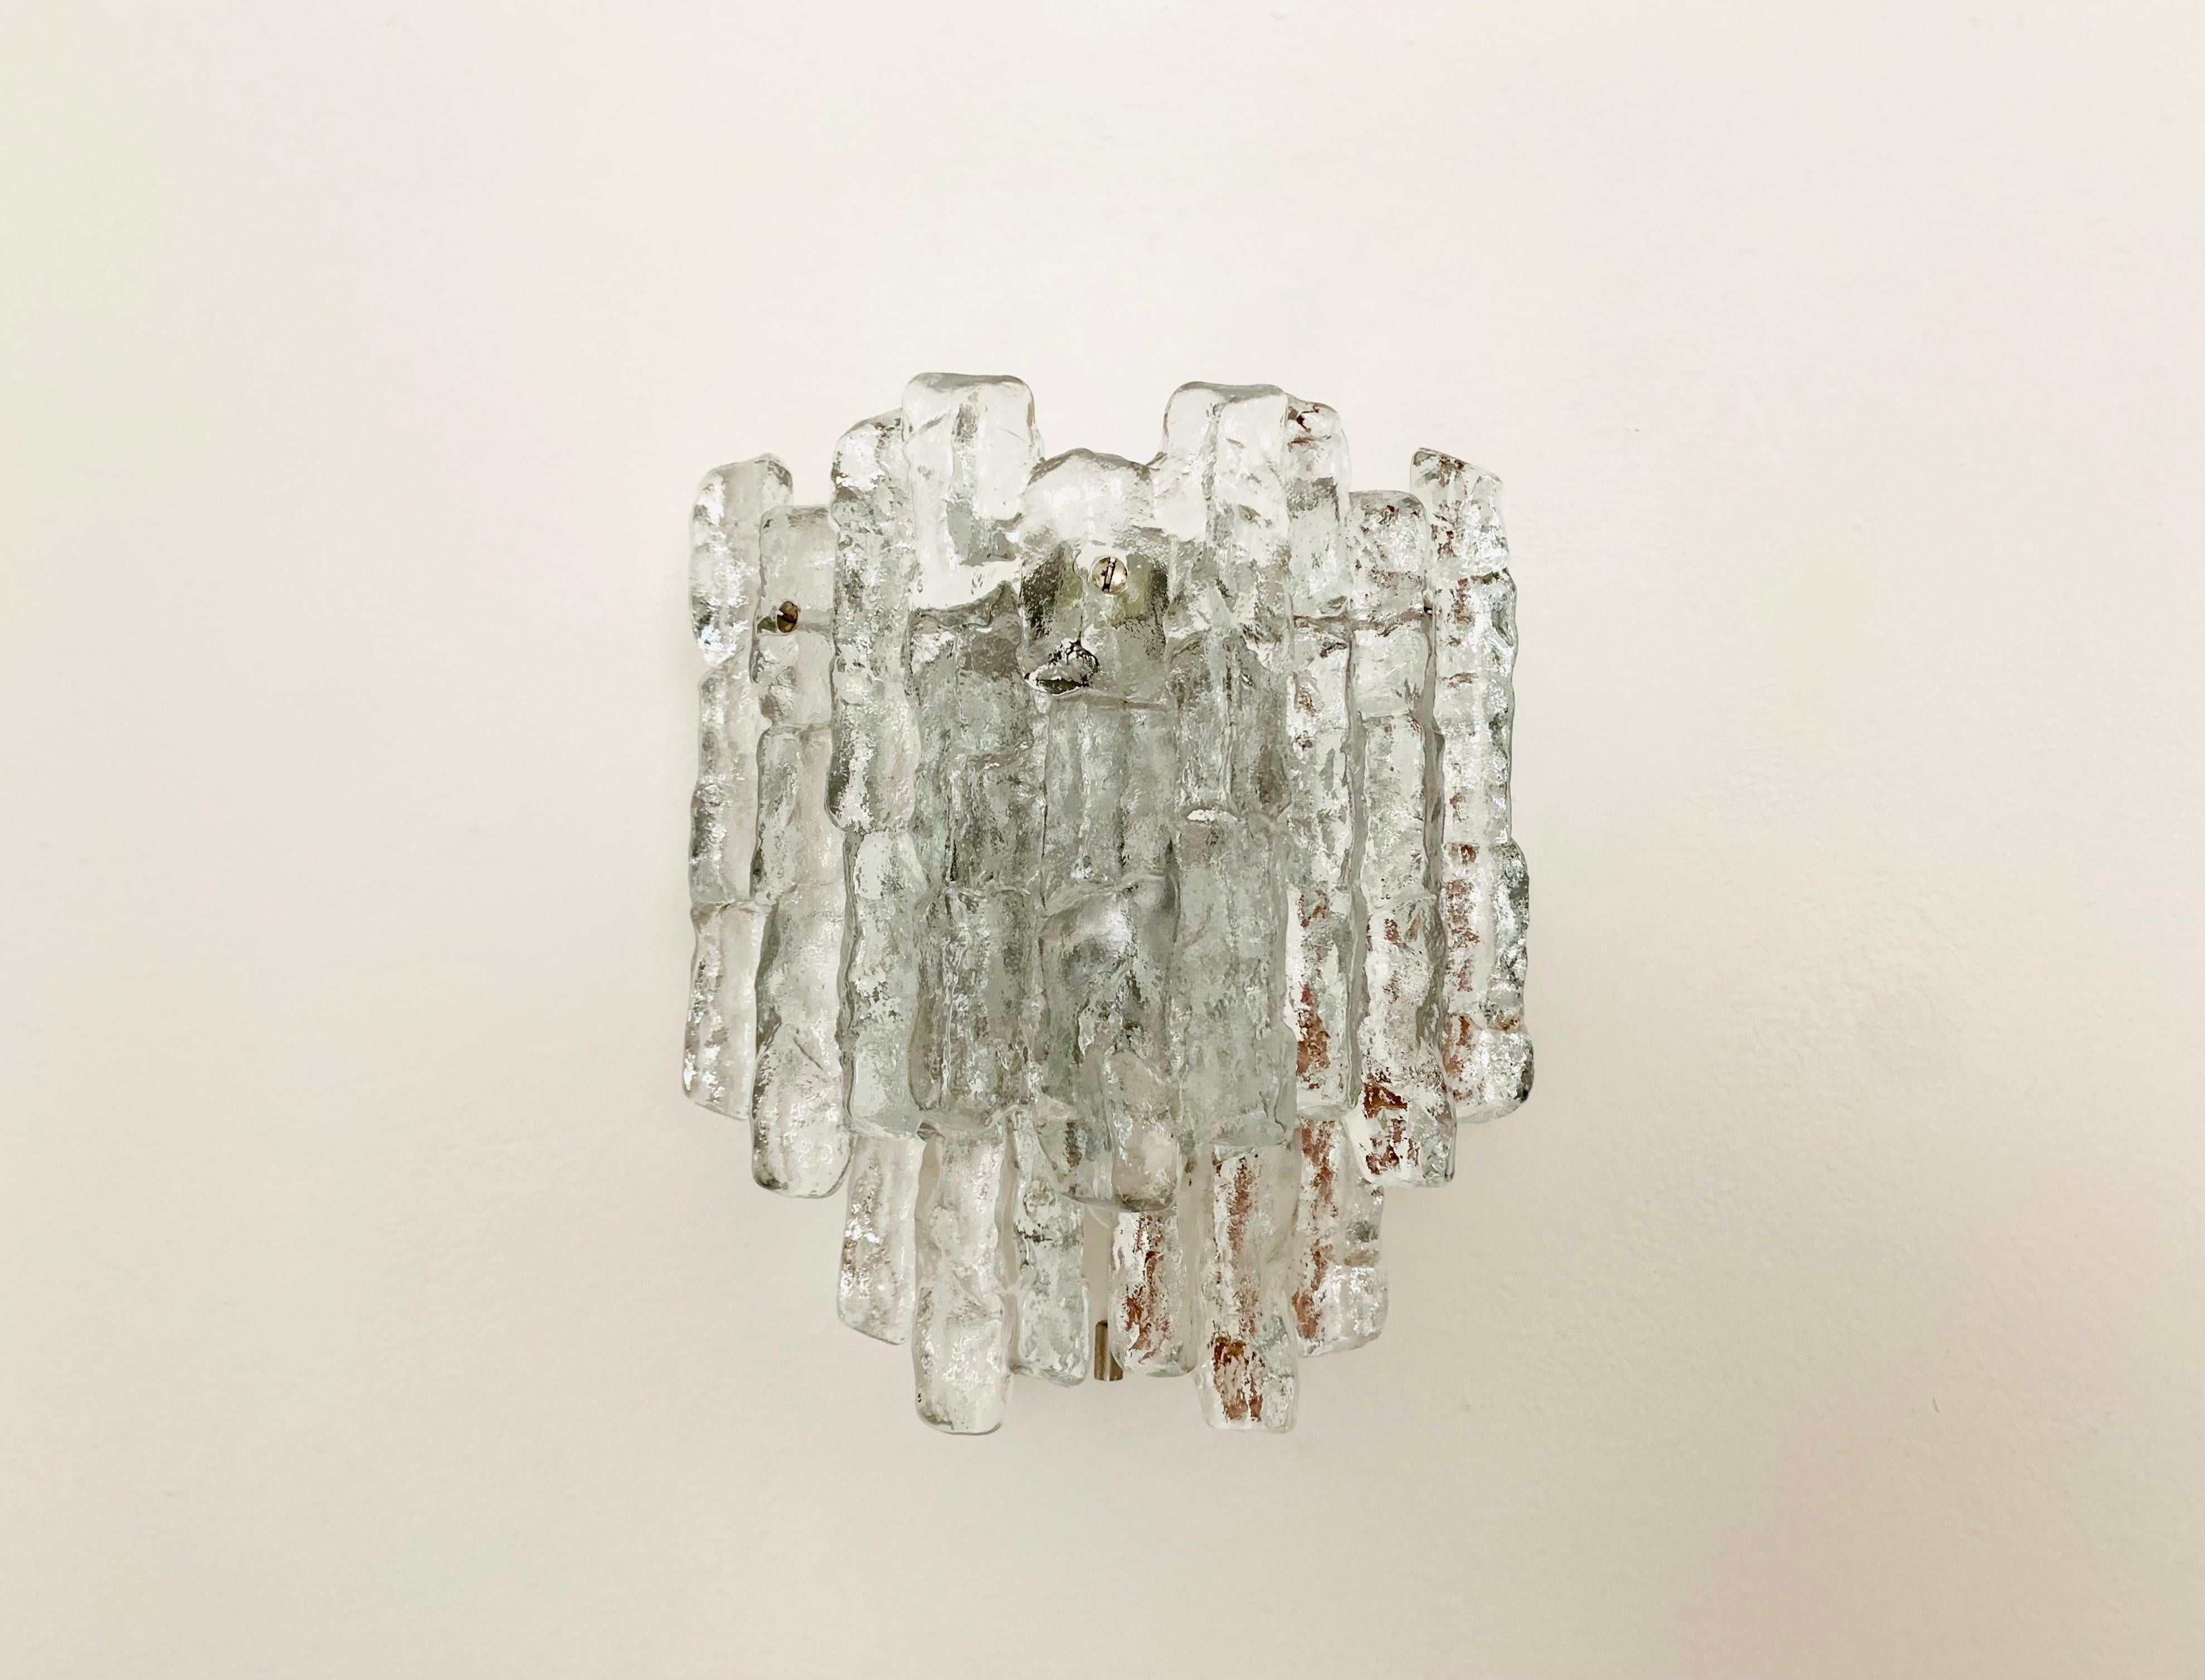 Sehr schöne Wandlampe aus Eisglas aus den 1960er Jahren.
Sehr angenehme Lichtwirkung dank des Eisglases, das ein elegantes, funkelndes Lichtspiel im Raum verbreitet.
Tolles Design und hochwertige Verarbeitung.

Hersteller: Franken KG
Design: J.T.